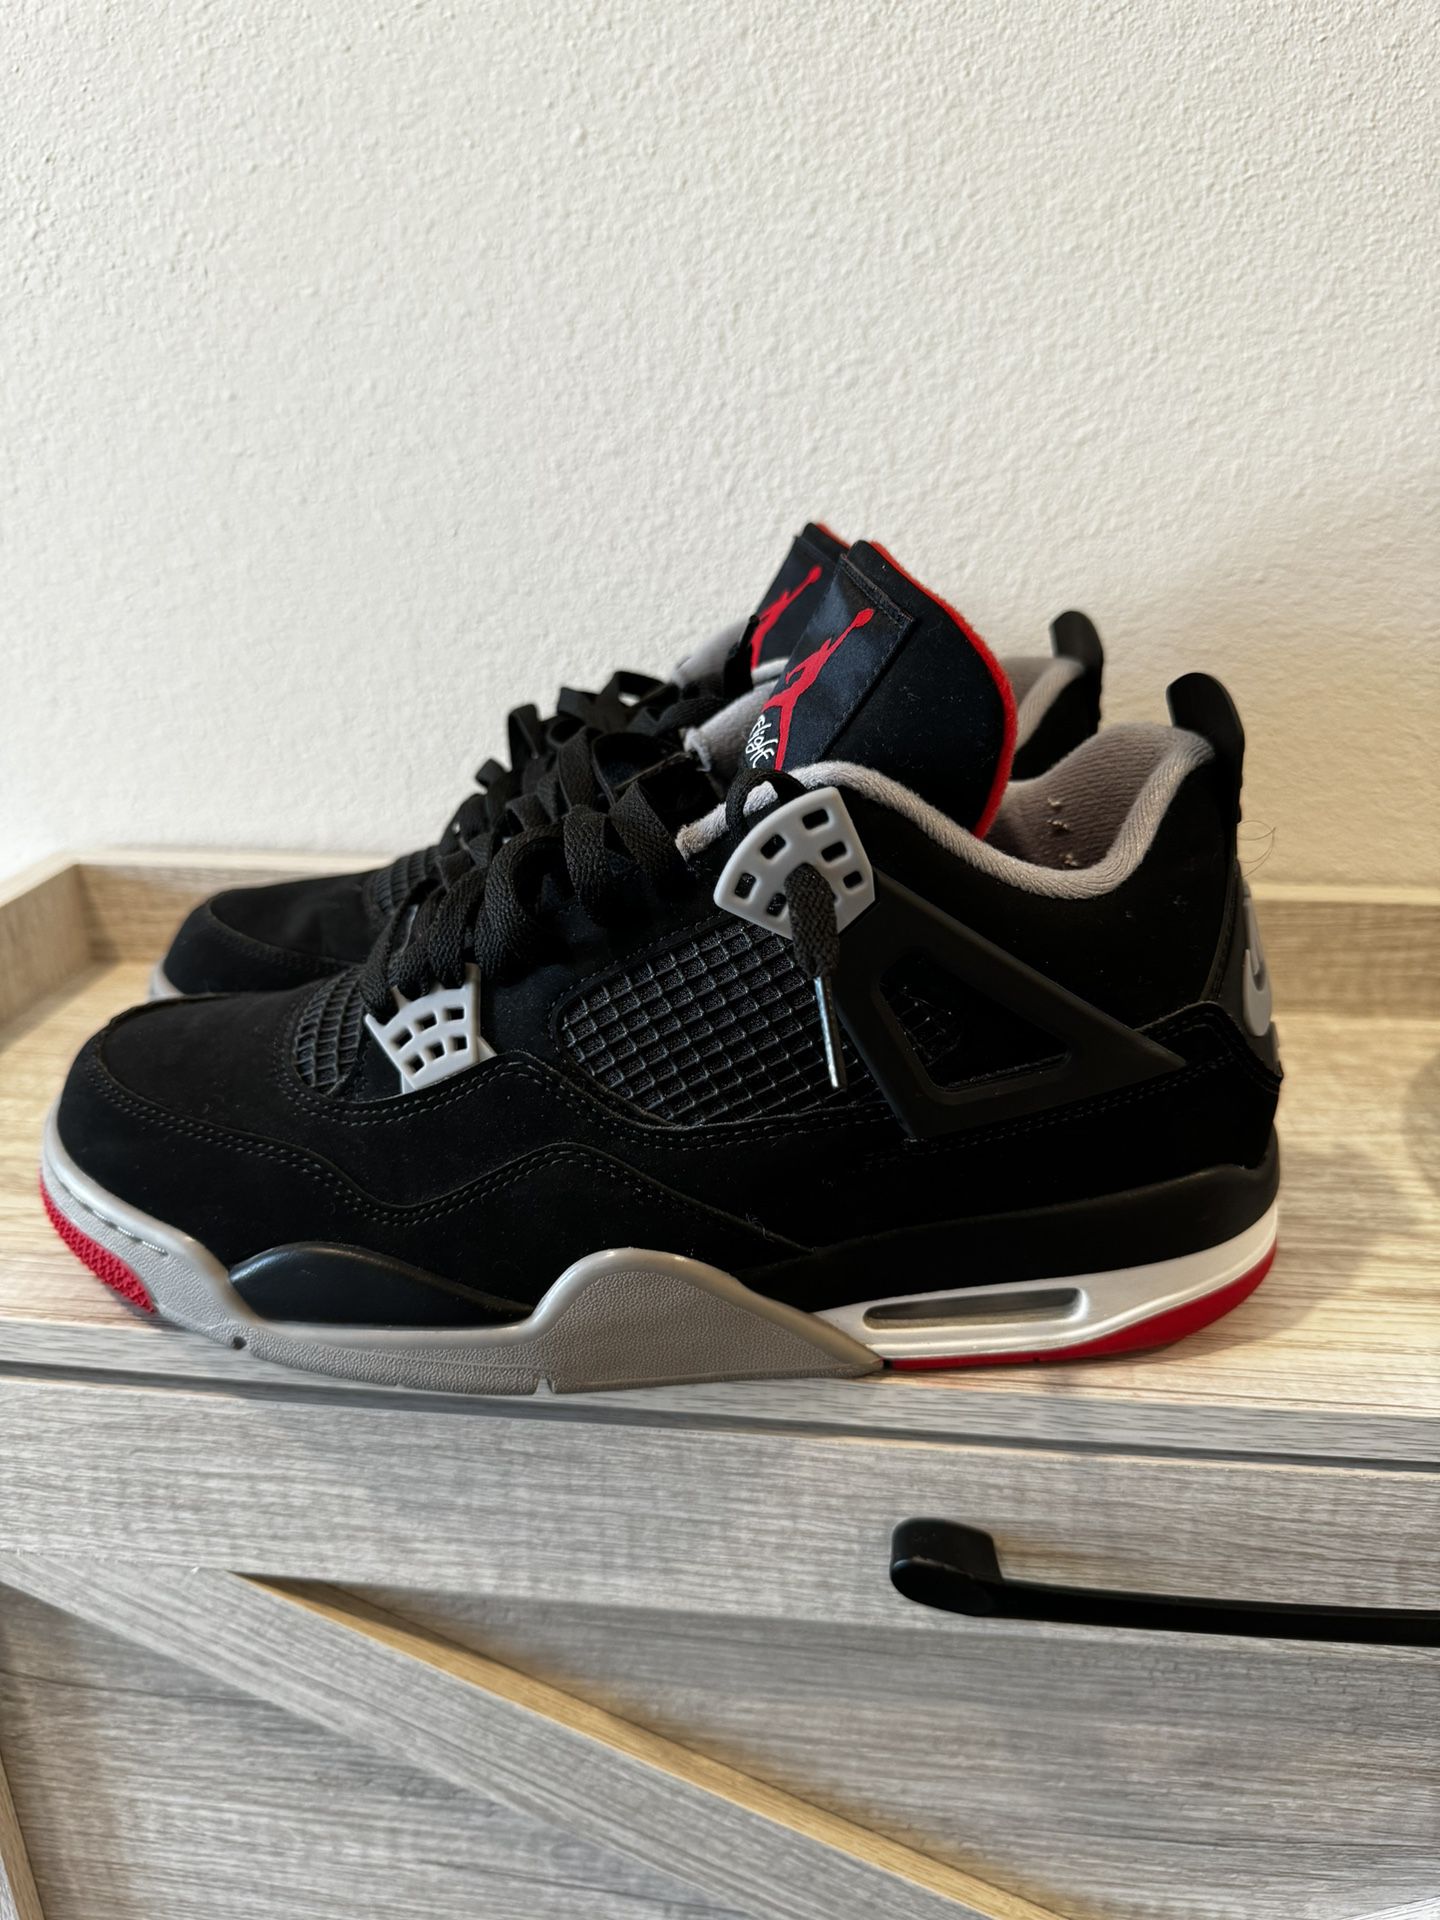 Air Jordan 4 “Bred” Size 10.5